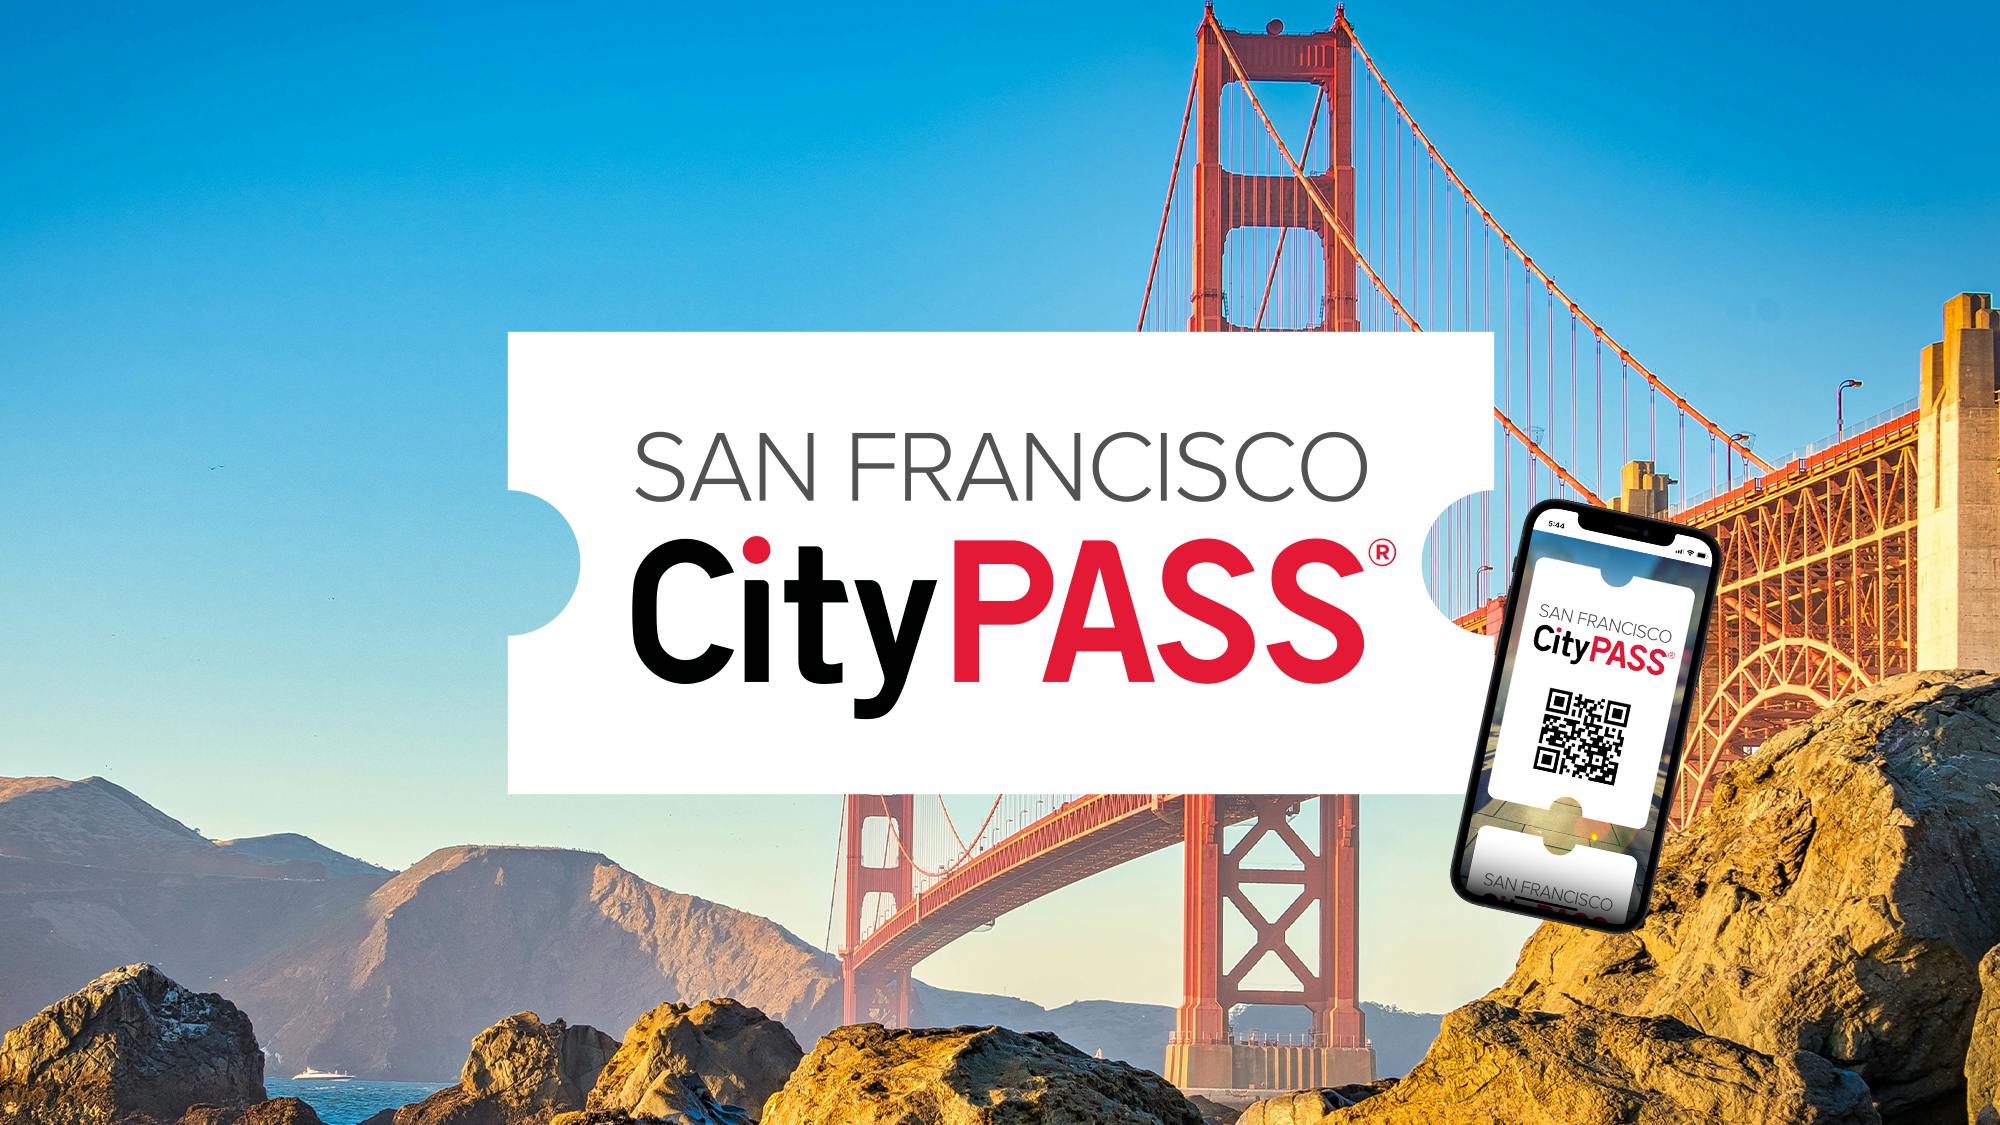 San Francisco CityPASS Mobile Ticket